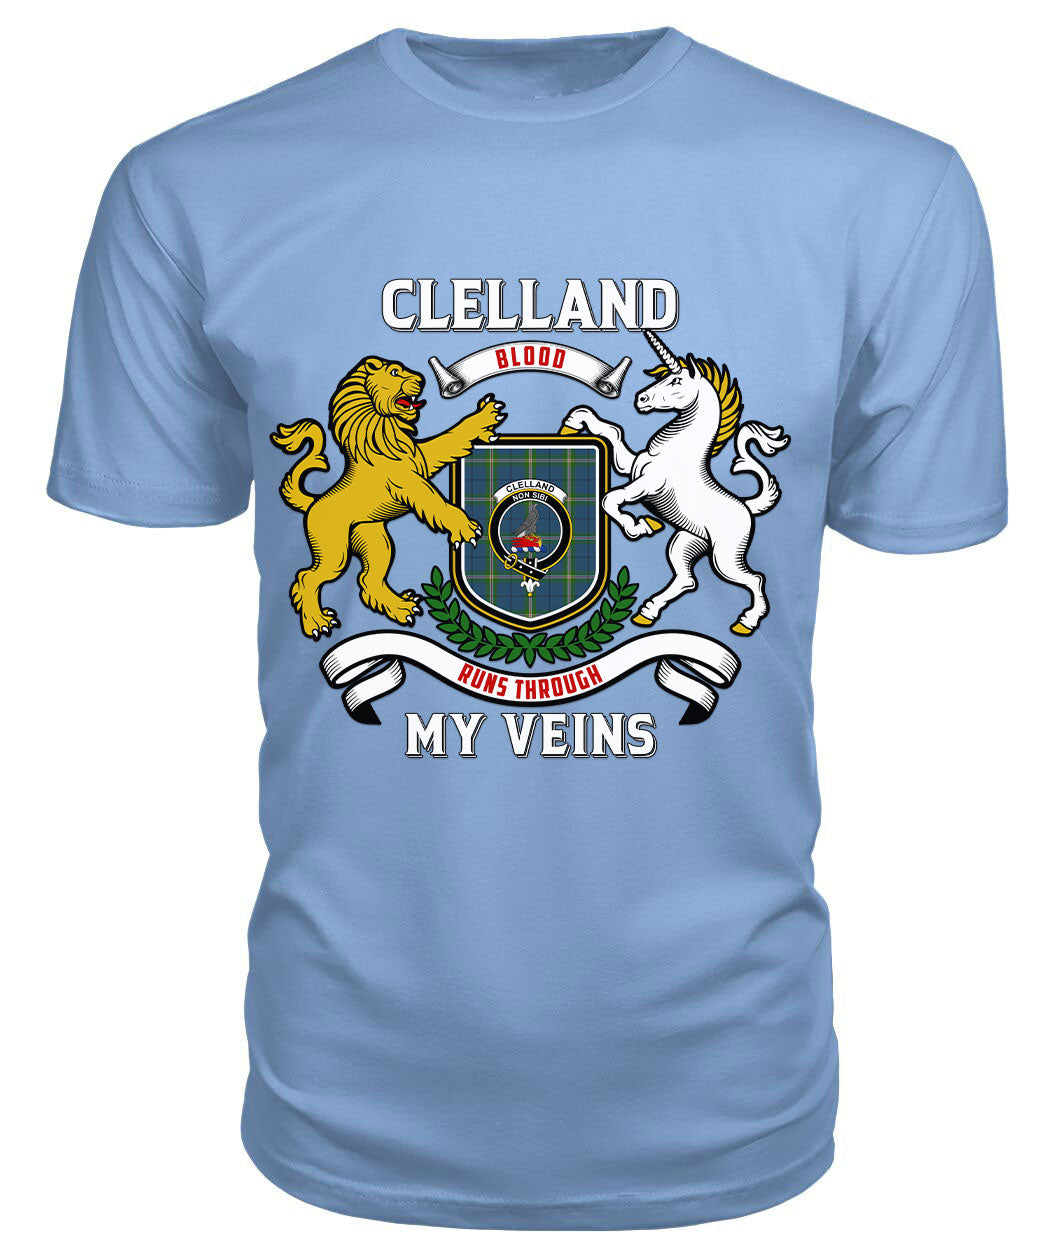 Clelland Tartan Crest 2D T-shirt - Blood Runs Through My Veins Style